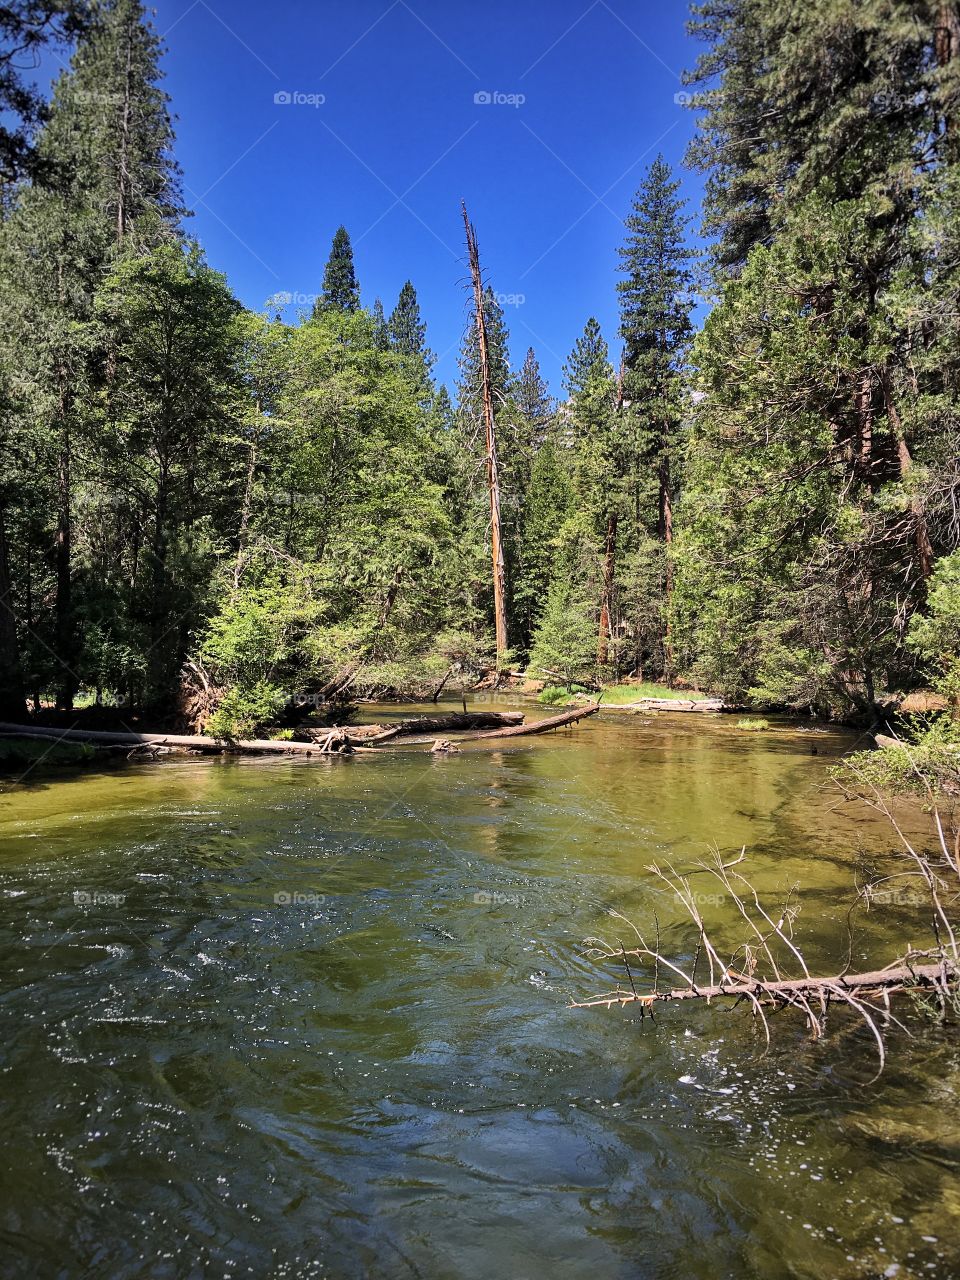 Tenaya Creek at Yosemite National Park 